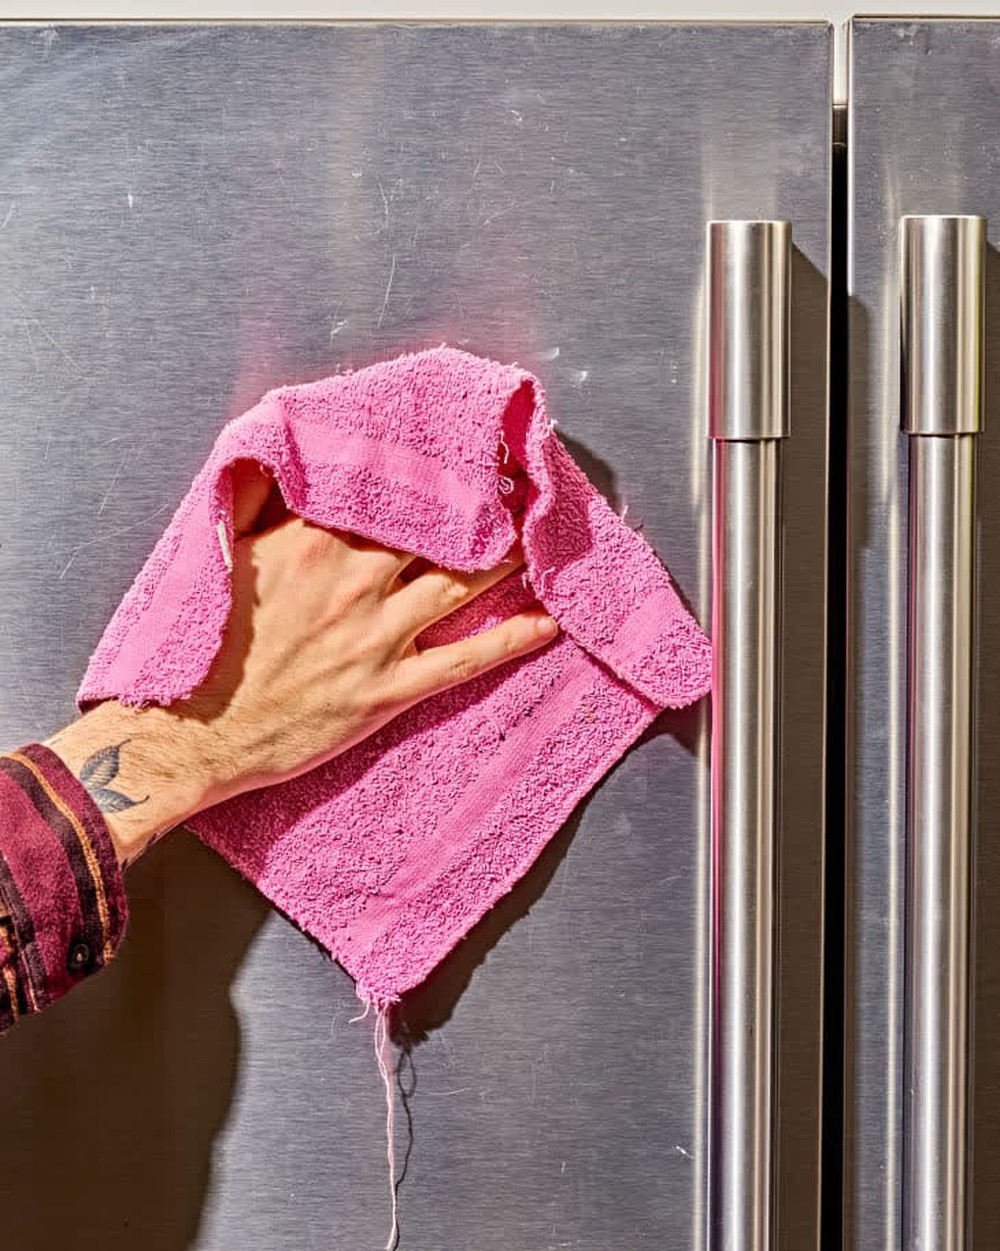 5 phương pháp để làm sạch các thiết bị nhà bếp bằng thép không gỉ: Phương pháp cuối đem lại hiệu quả bất ngờ - Ảnh 1.